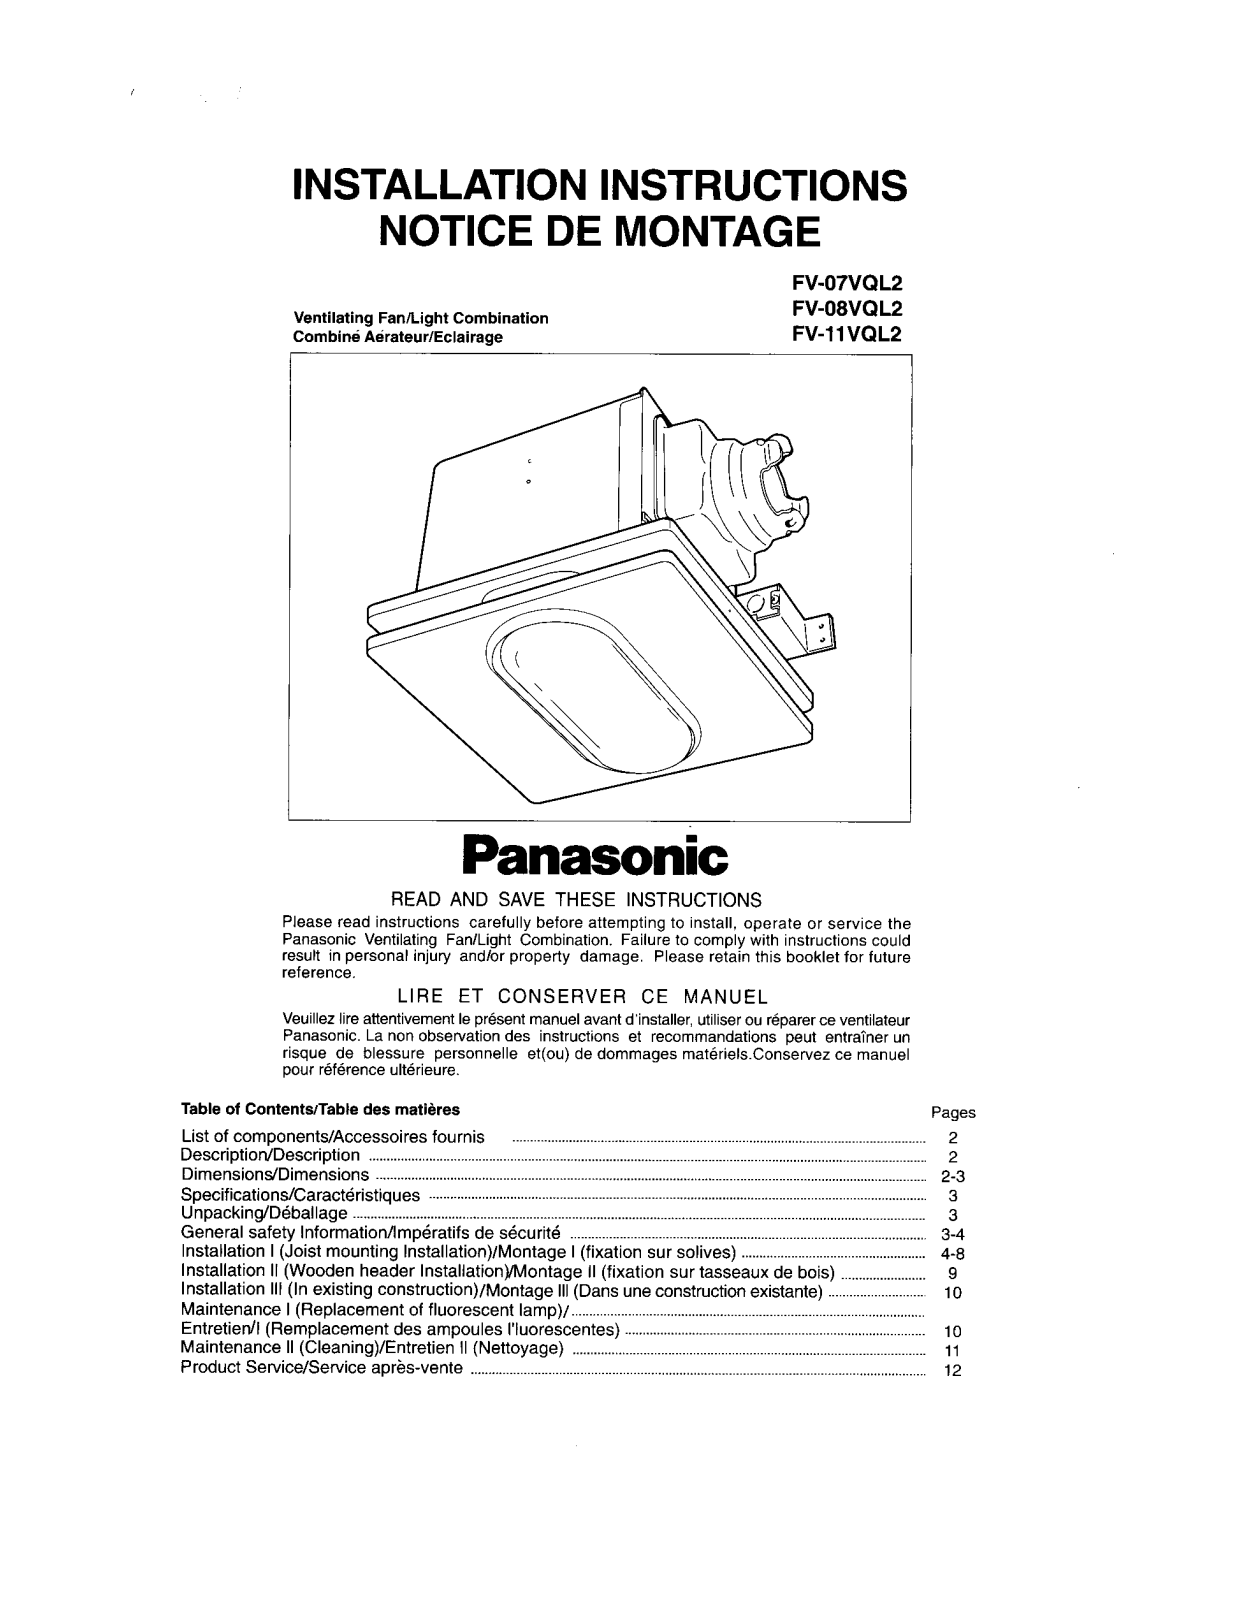 Panasonic fv-07vql2, fv-xxvql2 Operation Manual